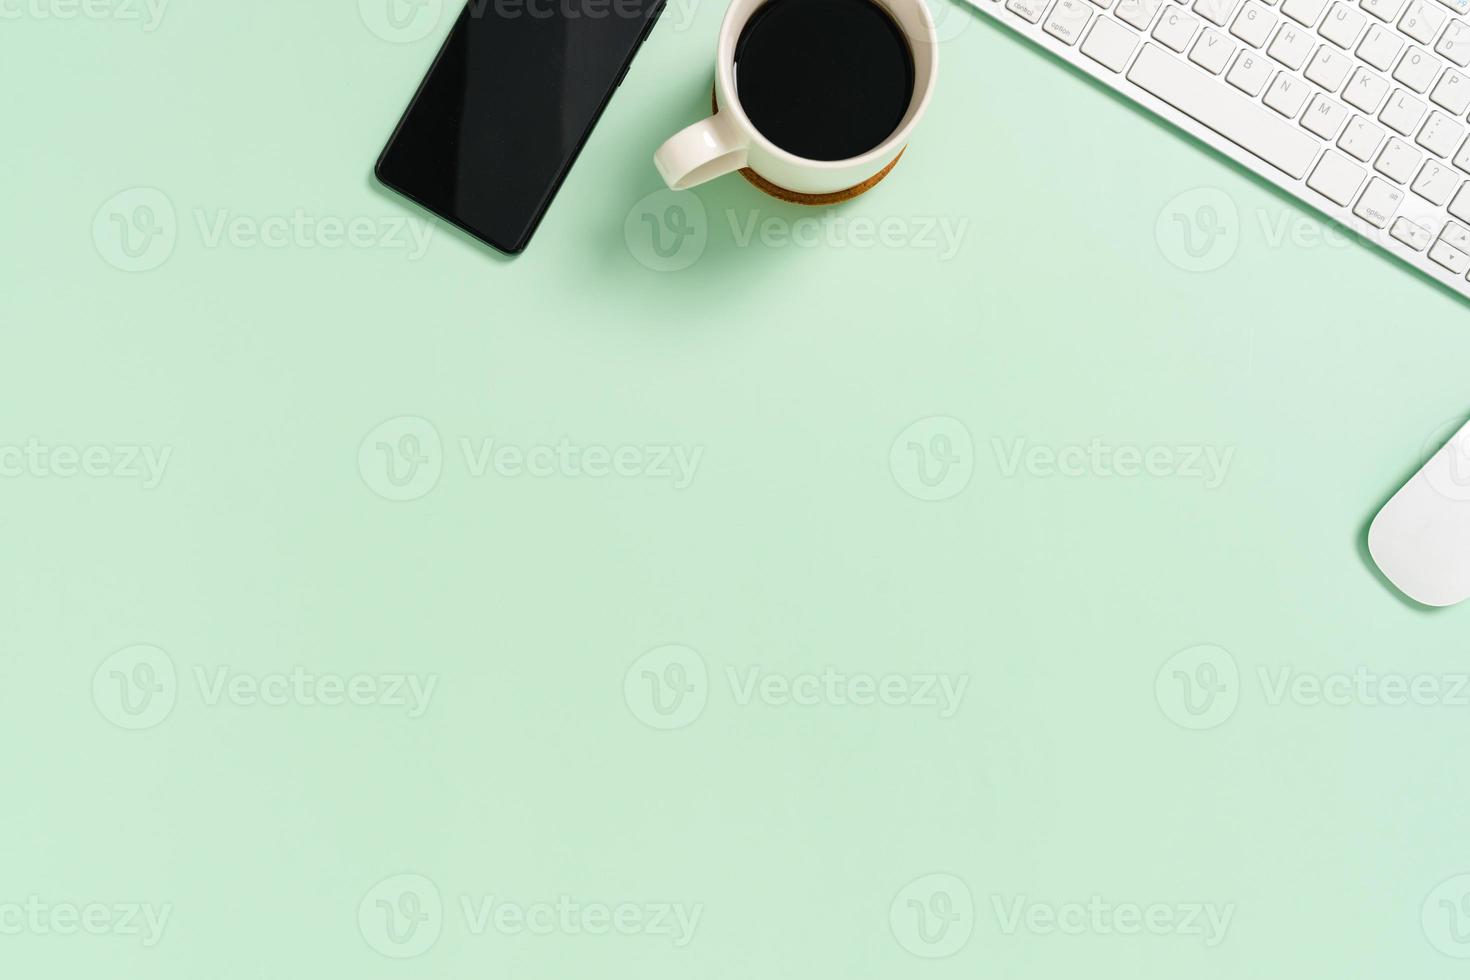 spazio di lavoro minimo - foto creativa piatta della scrivania dell'area di lavoro. scrivania da ufficio vista dall'alto con tastiera e mouse su sfondo di colore verde pastello. vista dall'alto con spazio di copia, fotografia piatta.